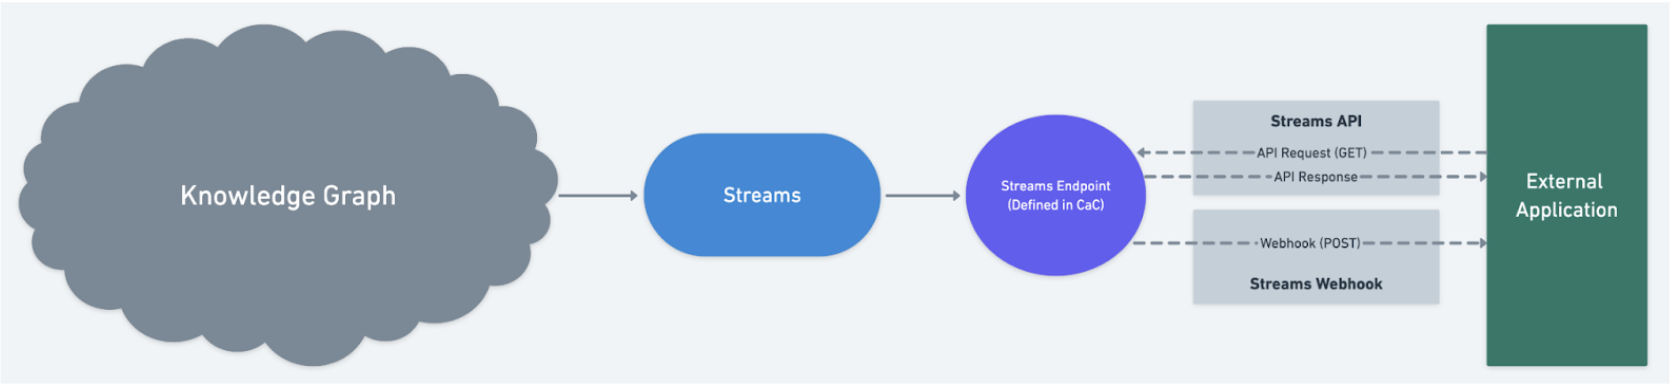 streams_diagram.png